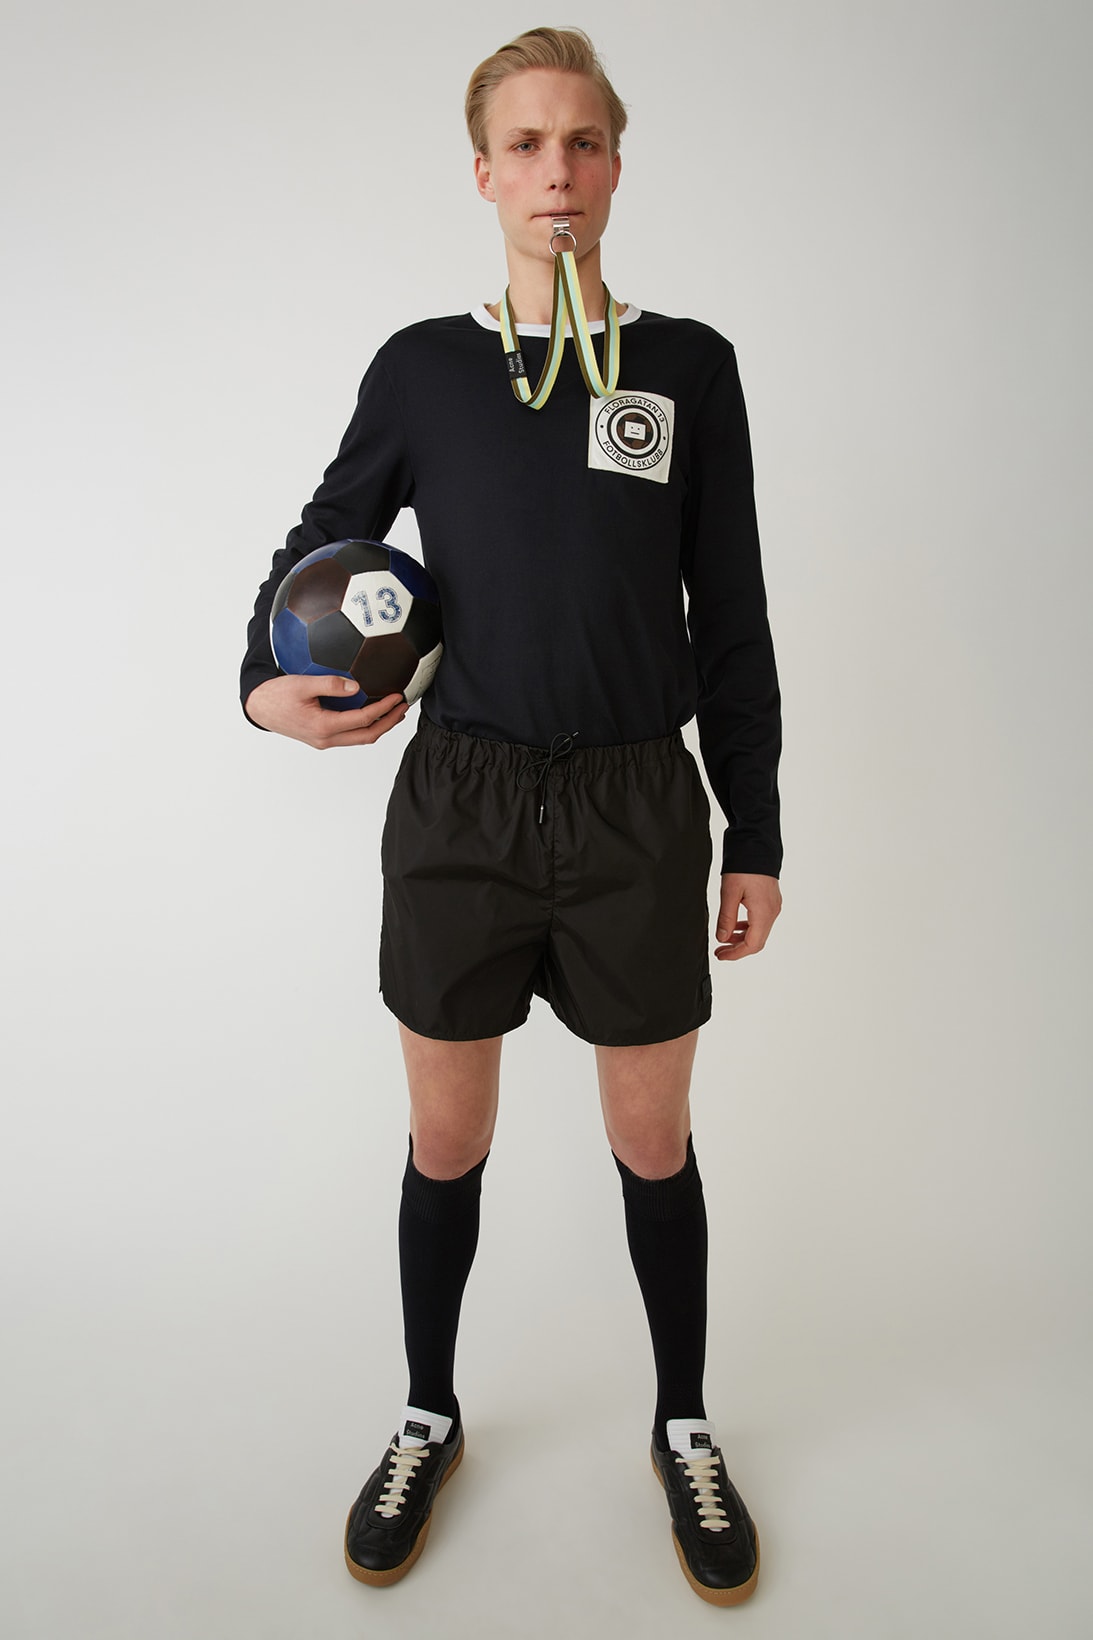 Acne Studios Fotbollsklubb football kit uniform jersey